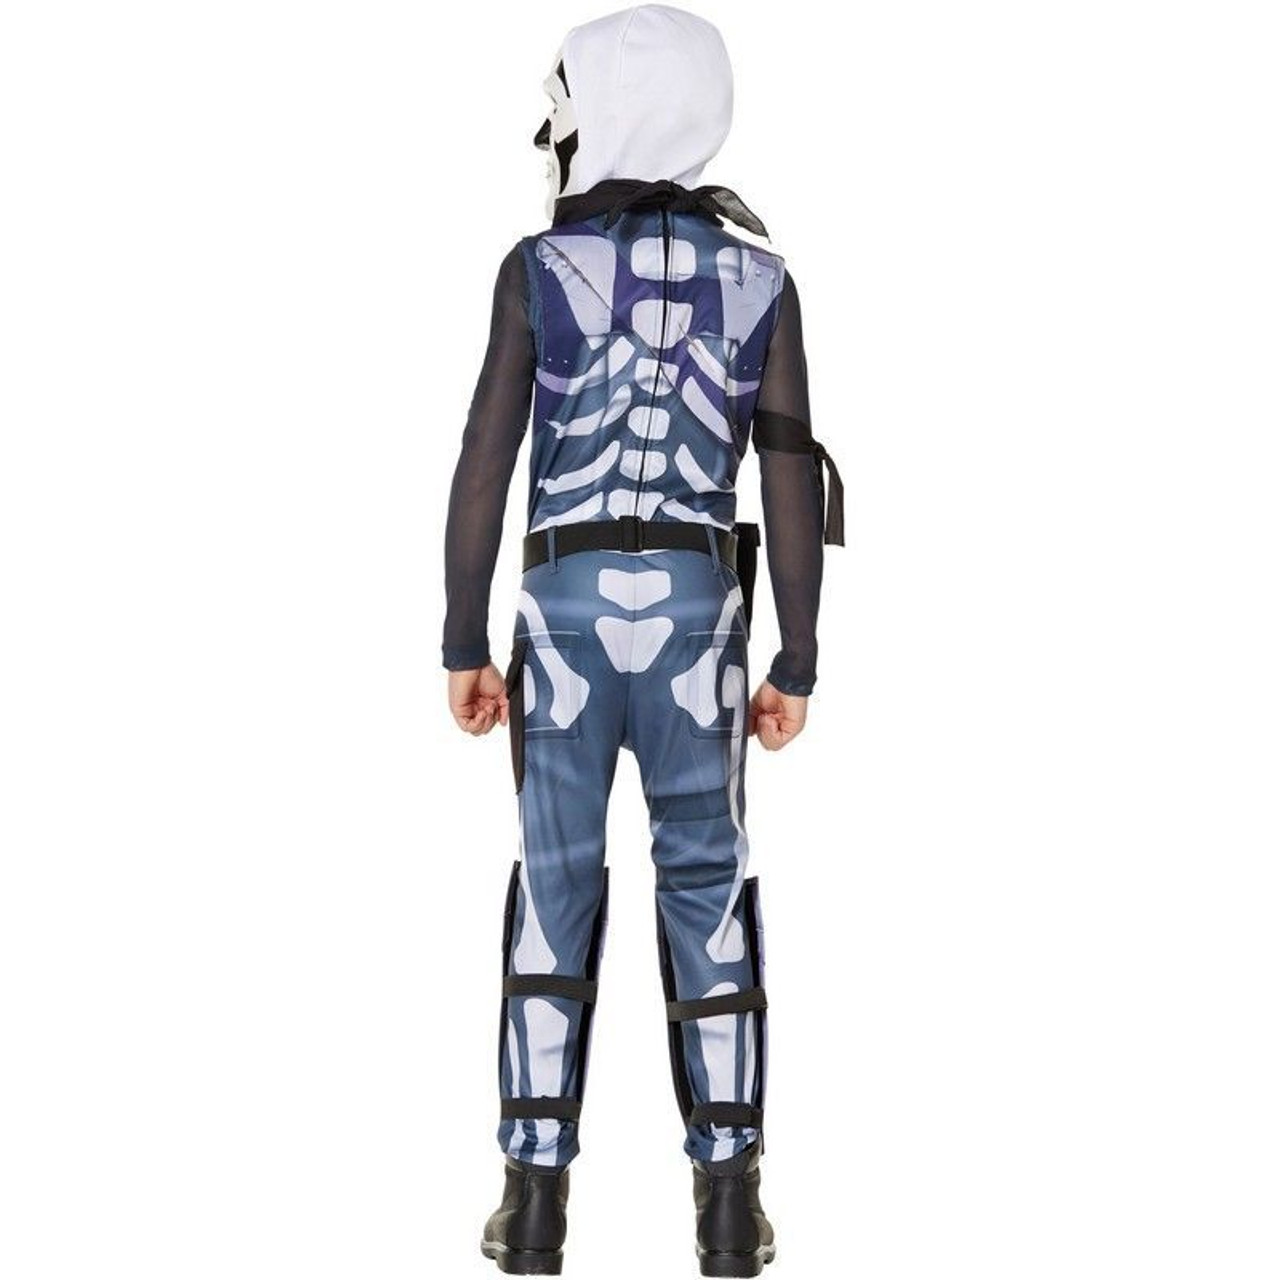 Kids Fortnite Skull Trooper Costume - inset